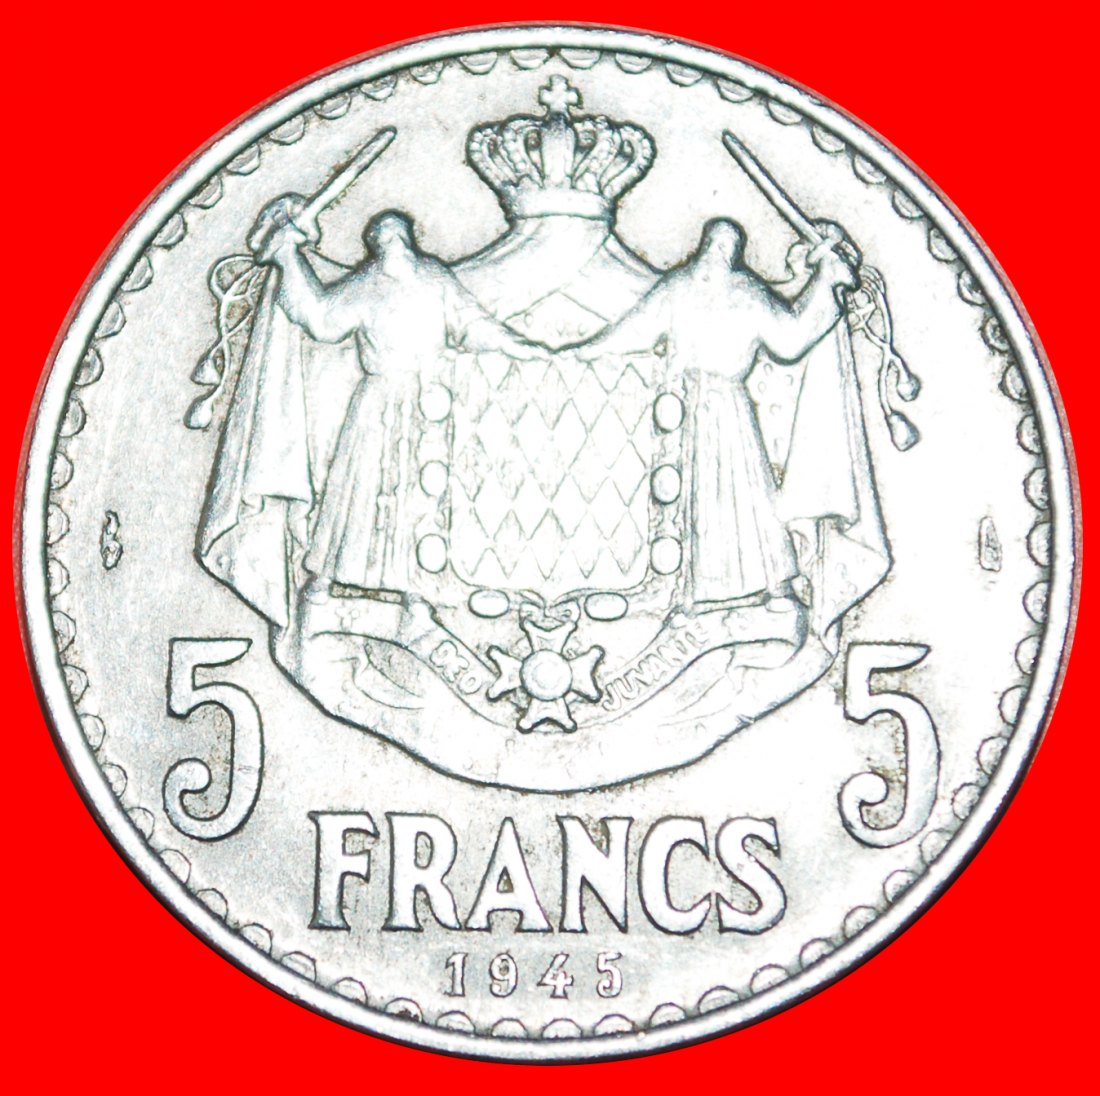  • FRANCE: MONACO ★ 5 FRANCS 1945 UNCOMMON! LOW START ★ NO RESERVE!   